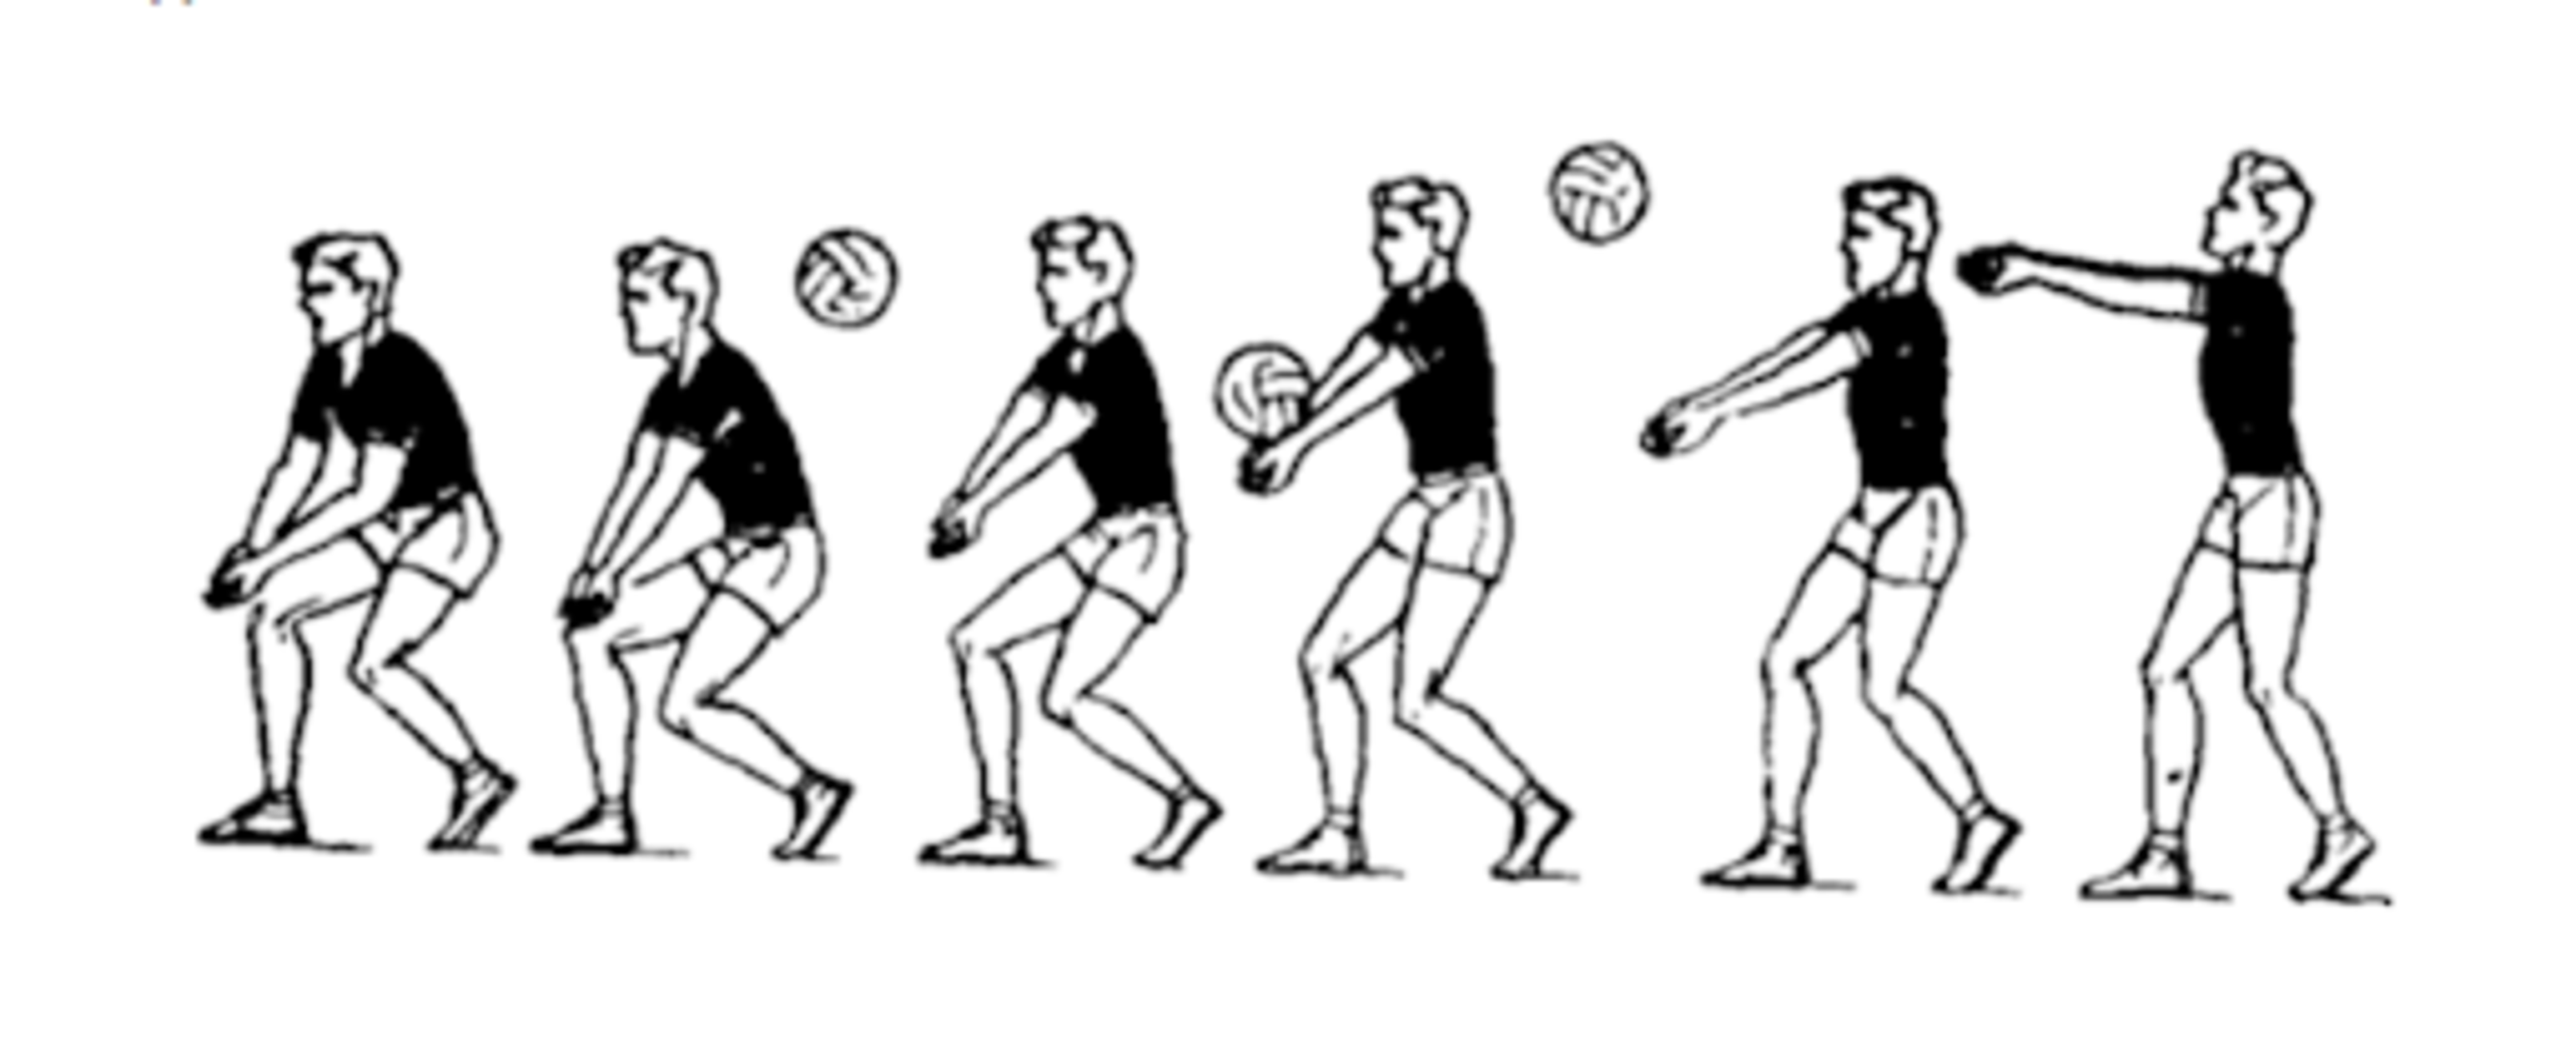 Техника приема и передачи мяча снизу двумя руками в волейболе. Приём мяча снизу 2 руками в волейболе. Техника приема мяча снизу двумя руками. Прием снизу двумя руками в волейболе. Волейбол передача сверху и снизу